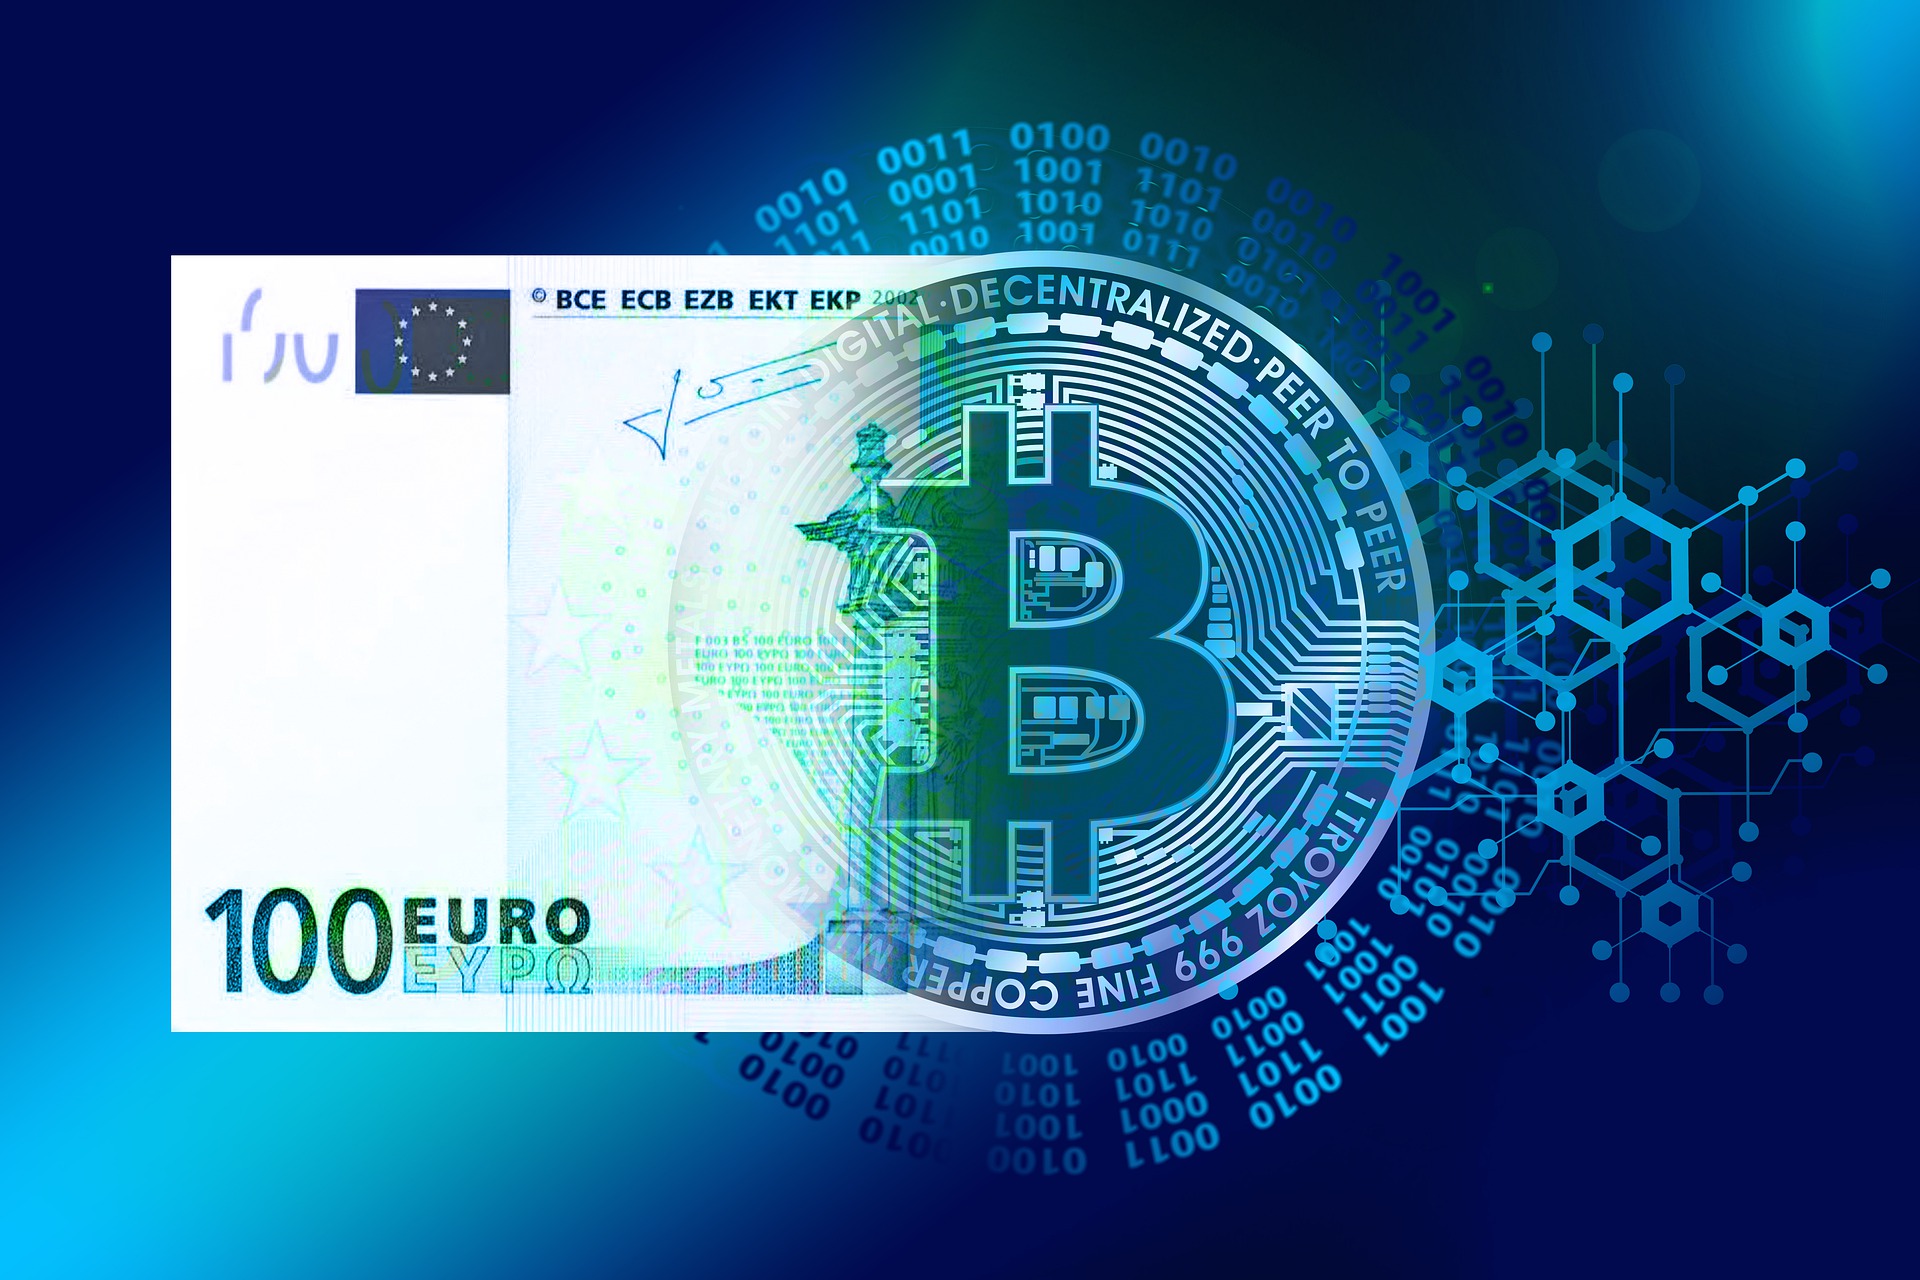 De progressieve transformatie van 100 euro naar een Bitcoin